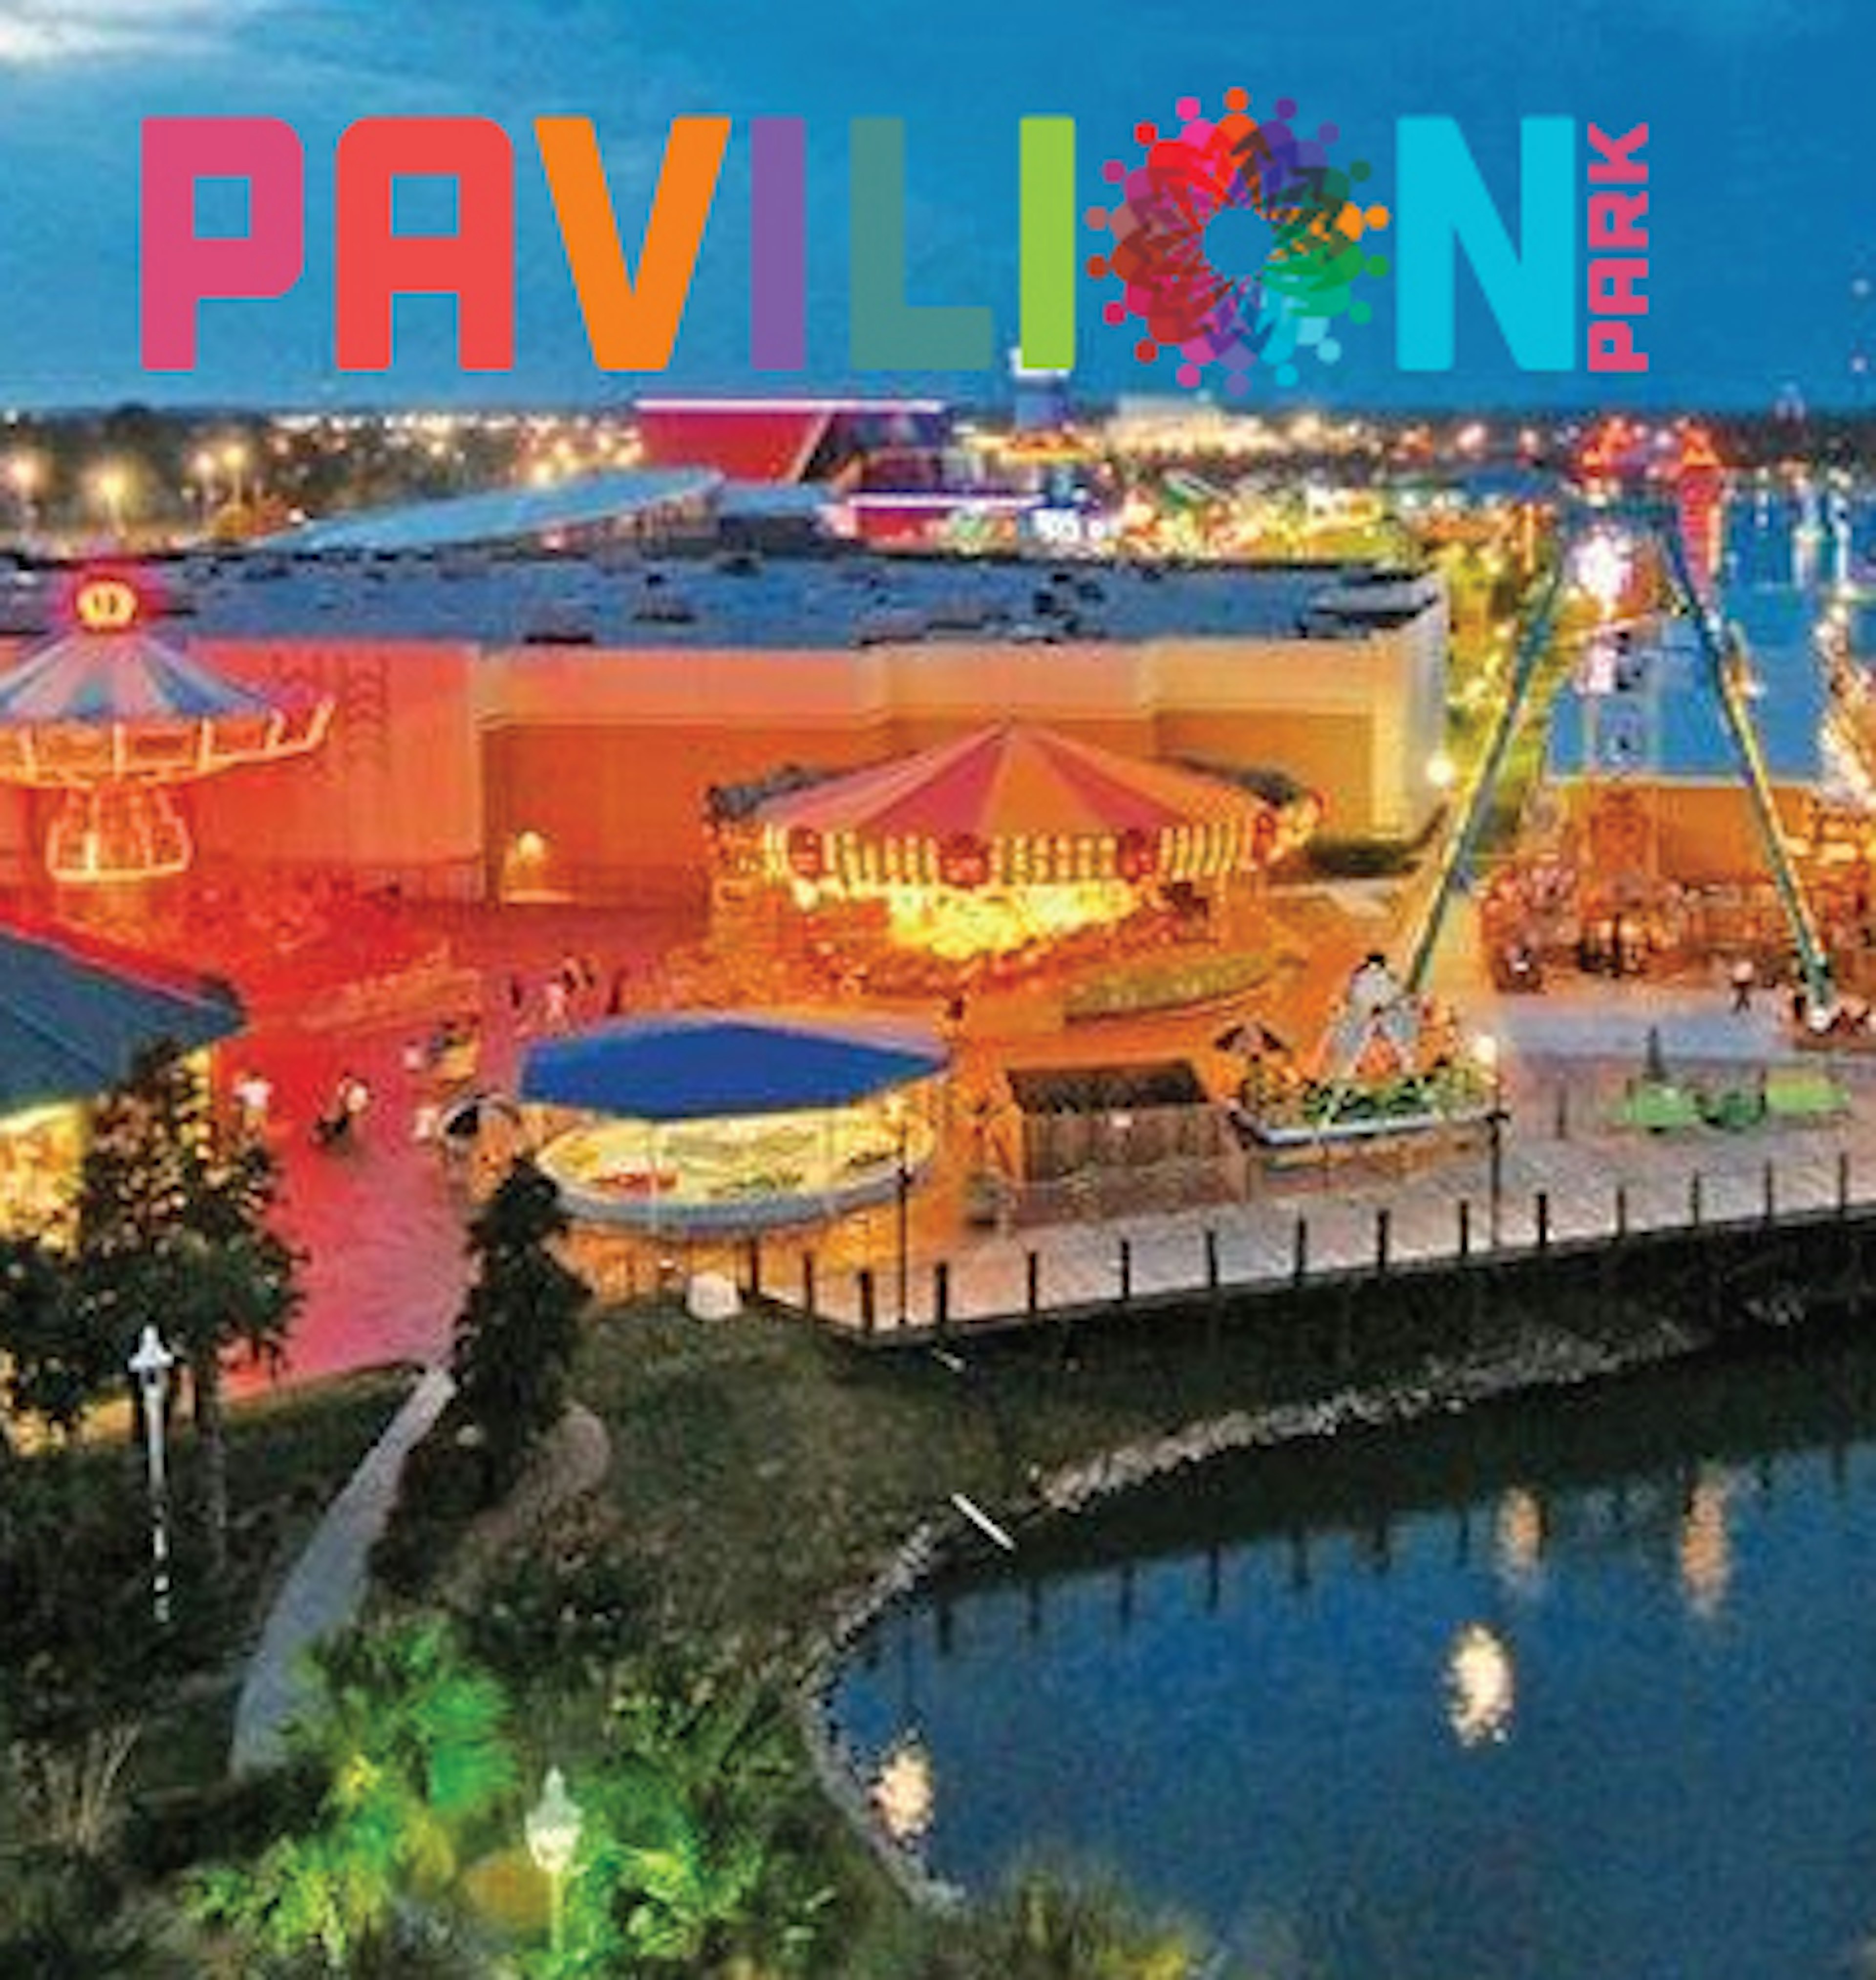 Pavilion Park